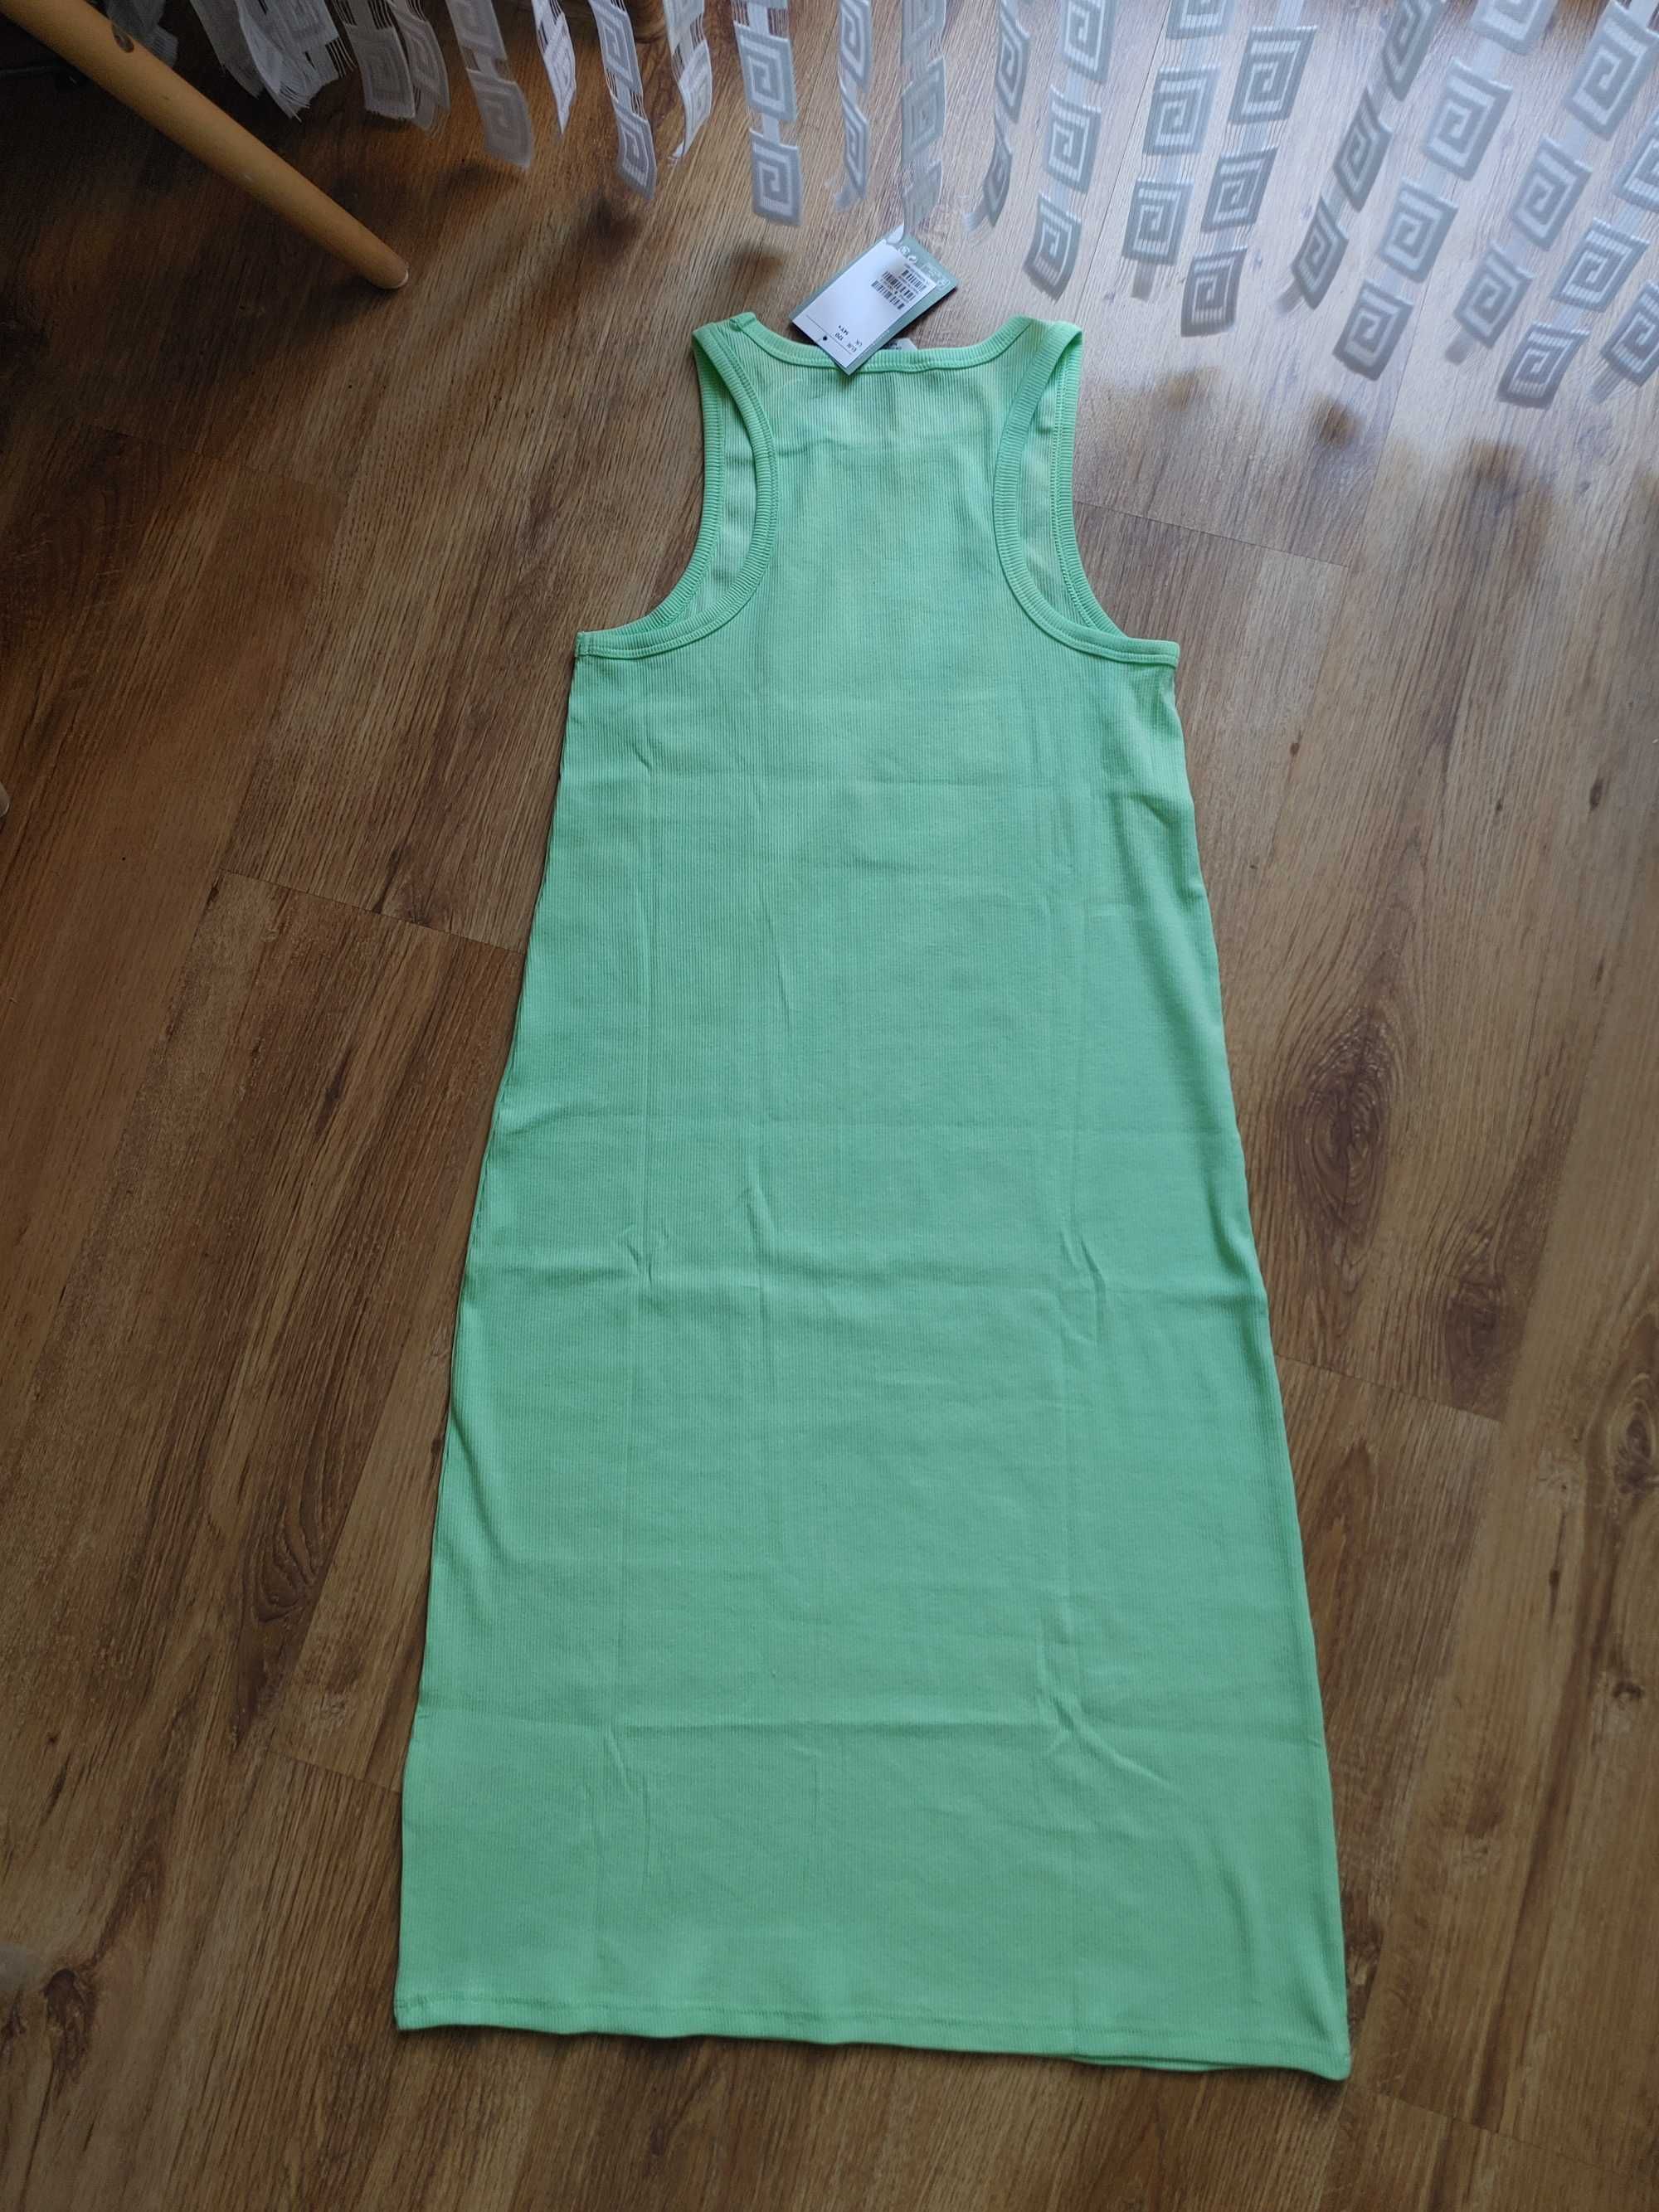 H&M prążkowana sukienka zielone jabłuszko 170cm 12l+ nowa